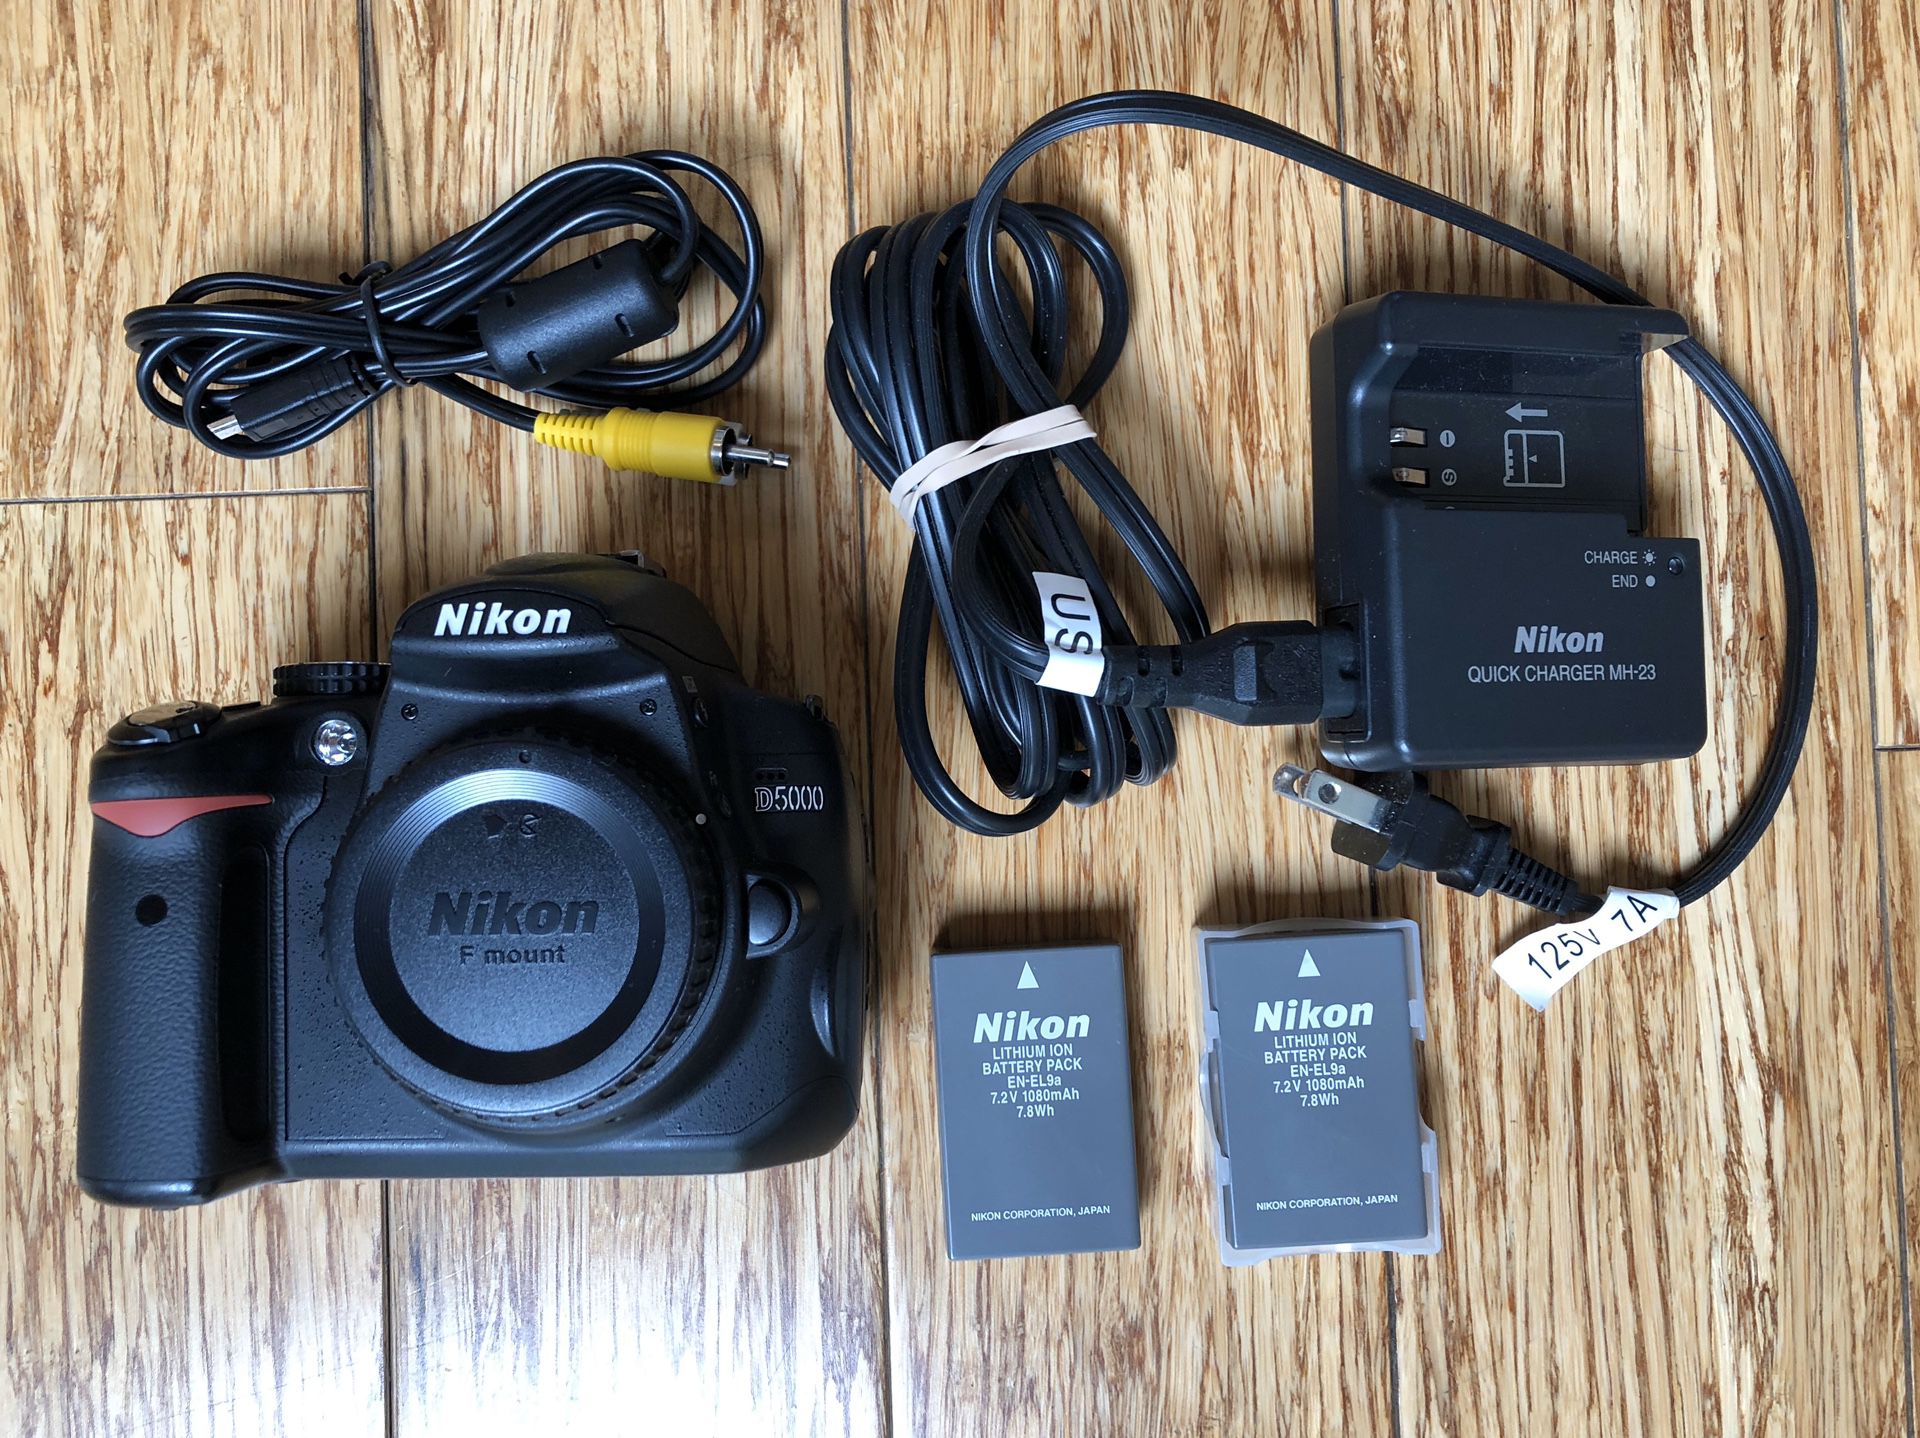 Nikon D5000 kit plus 2 lenses and bag